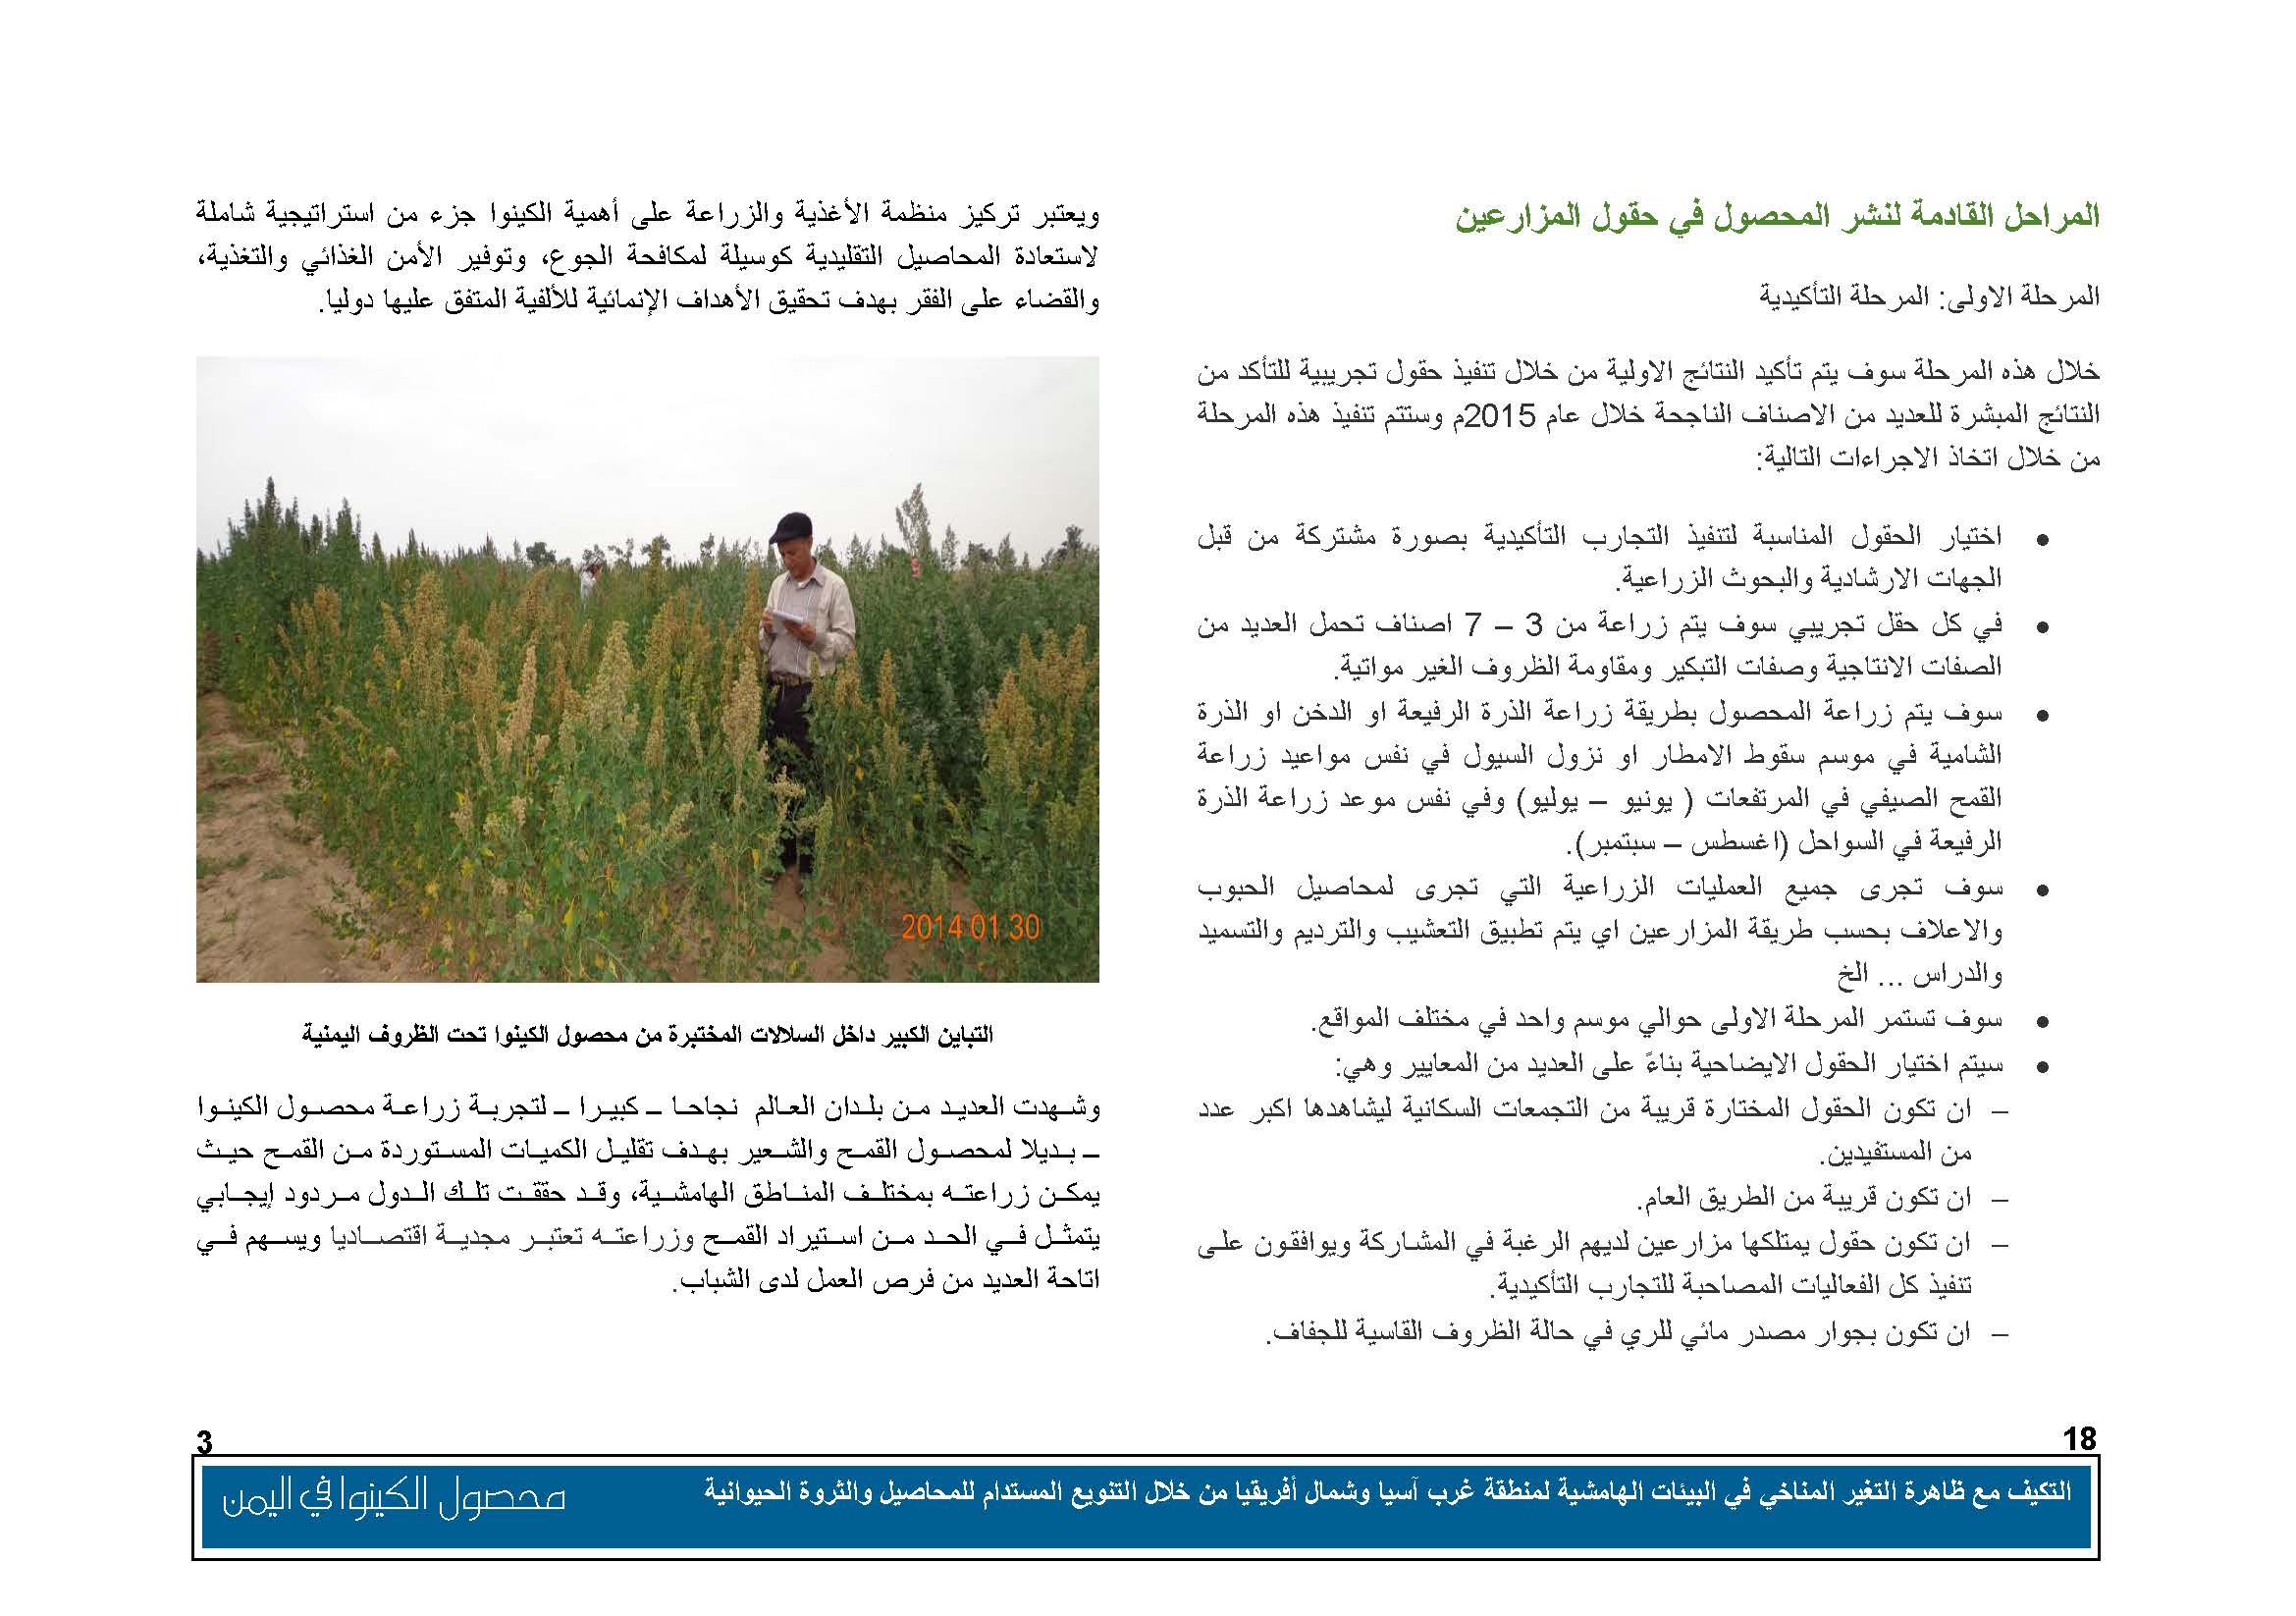 محصول الكينوا في اليمن (1)_Page_04